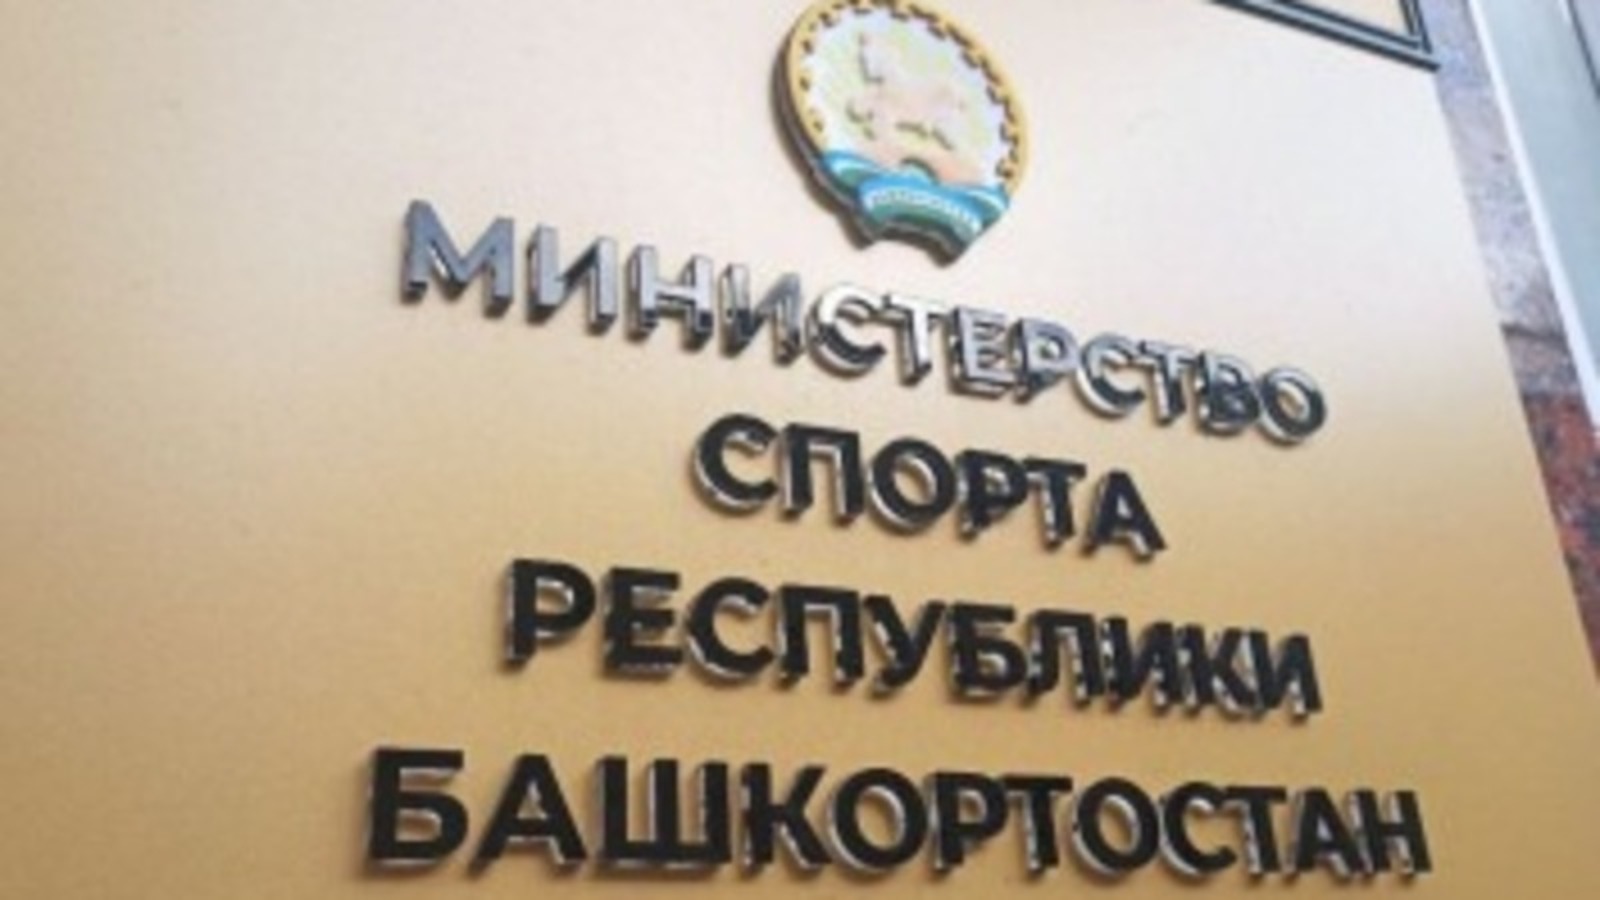 Минспорта РБ перечислит свой однодневный заработок жителям Луганской народной республики